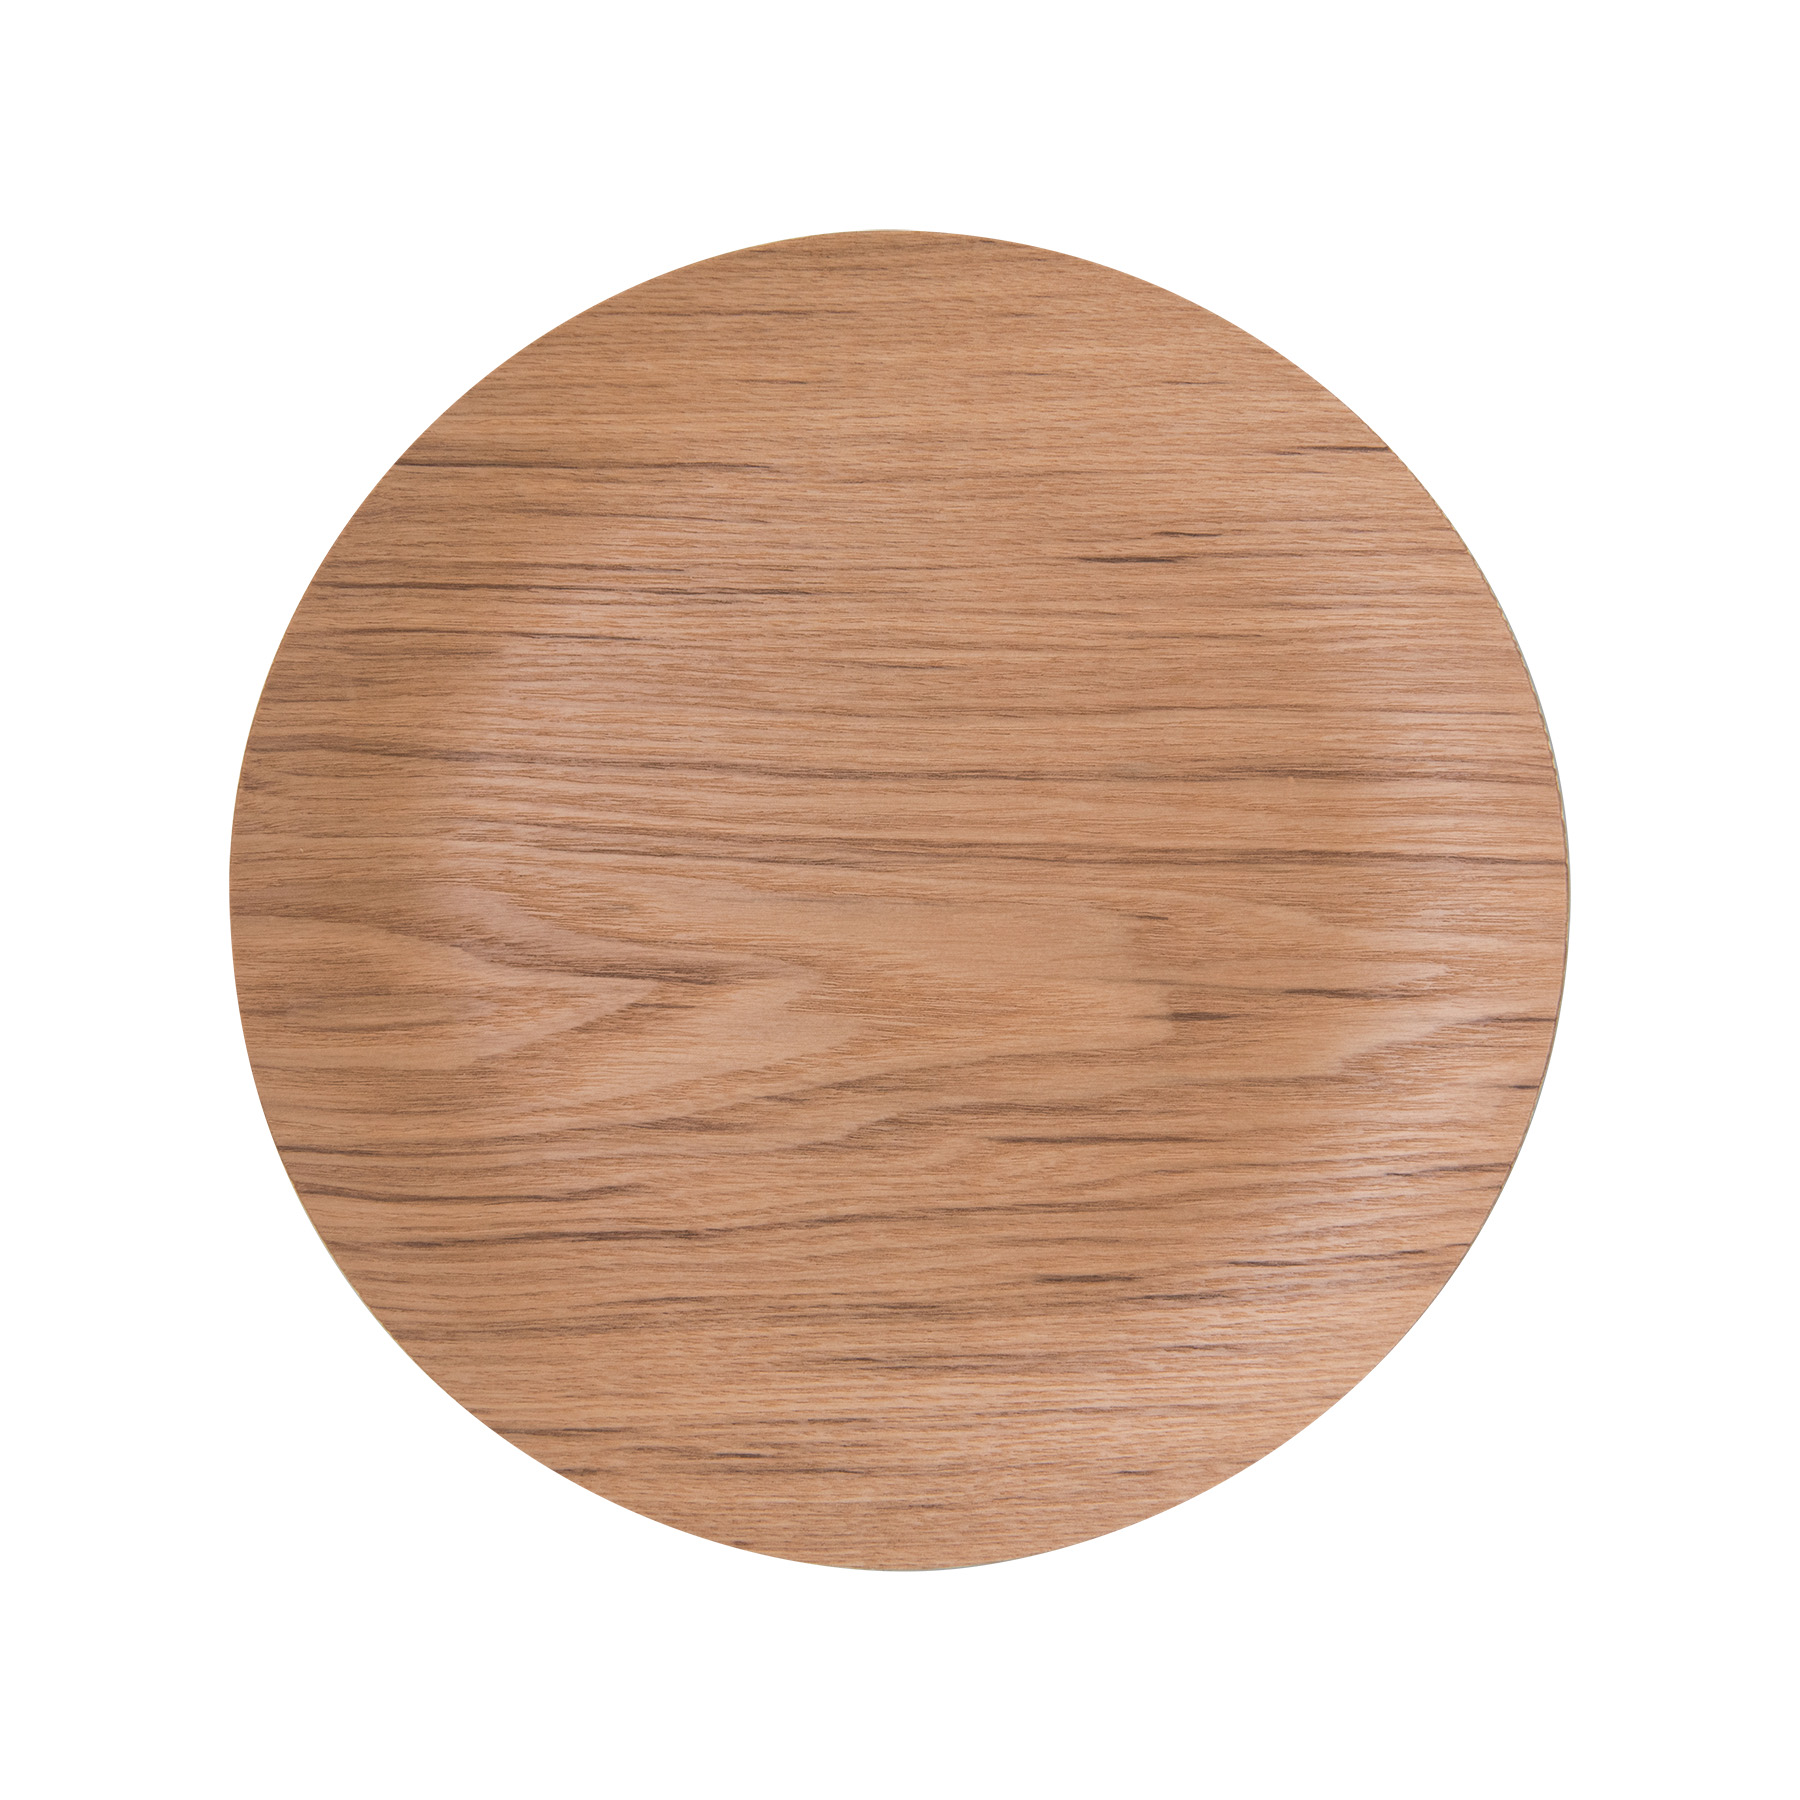 選べる3色 28cm 木製 木 丸型 トレー トレイ Ｍ プレート 丸 お盆 皿 ウッド 天然木 合板 軽い 軽量 カフェ ランチ ランチプレート  スタック wood plate